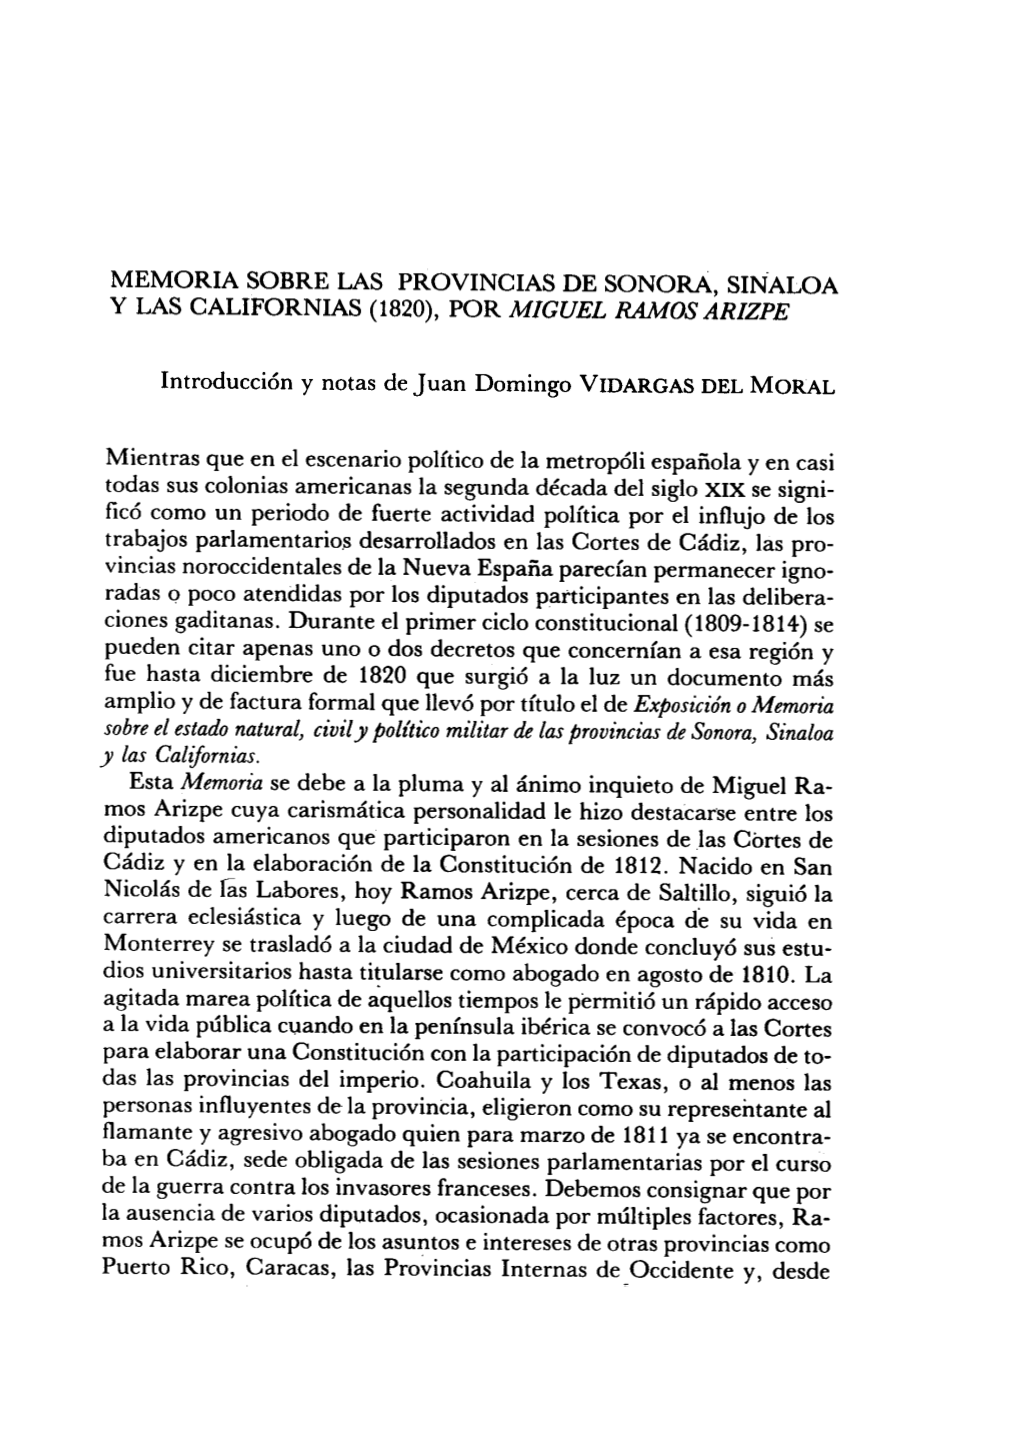 MEMORIA SOBRE LAS PROVINCIAS DE SONORA, SINALOA Y LAS CALIFORNIAS (1820), POR MIGUEL RAMOSARIZPE